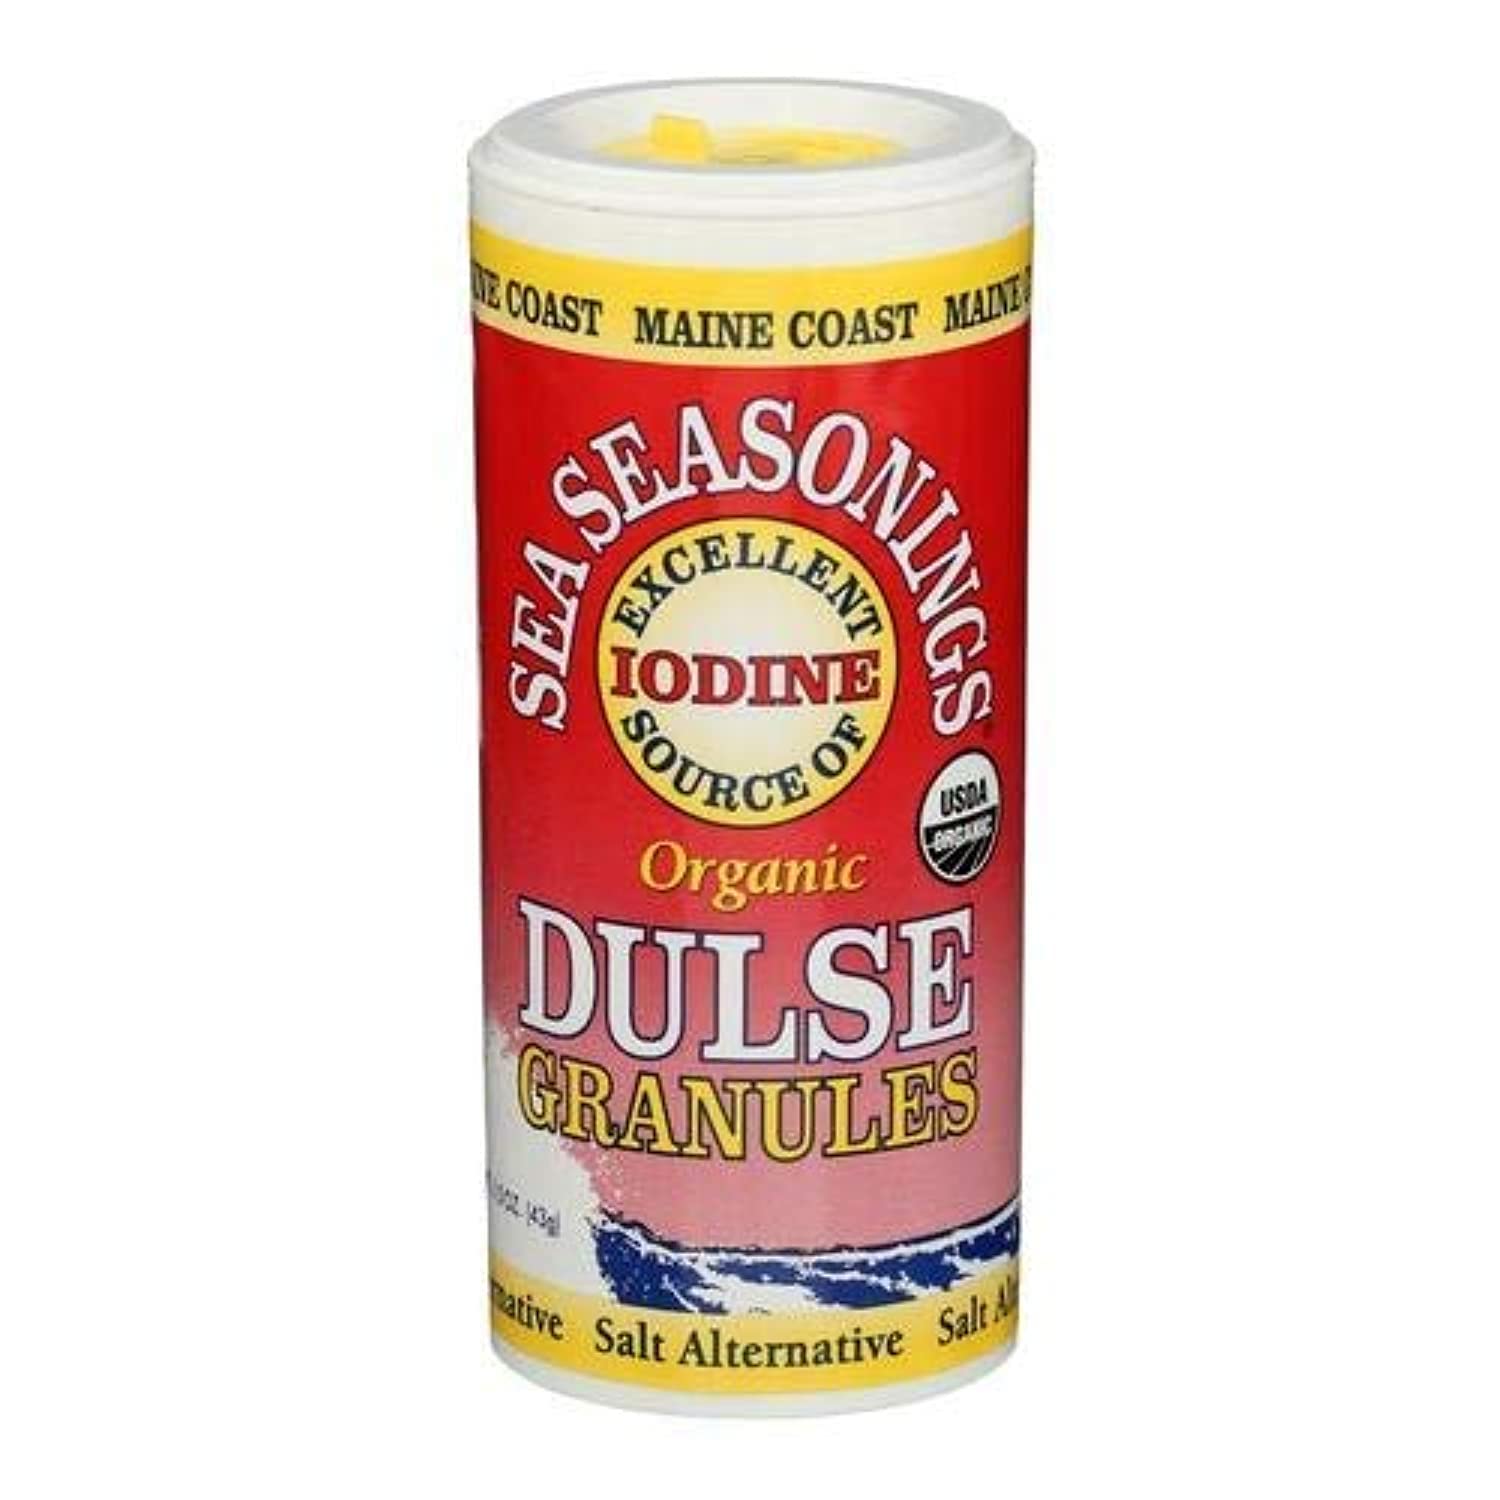 Dulse Granules, shaker (Raw, Organic) 1.5 oz